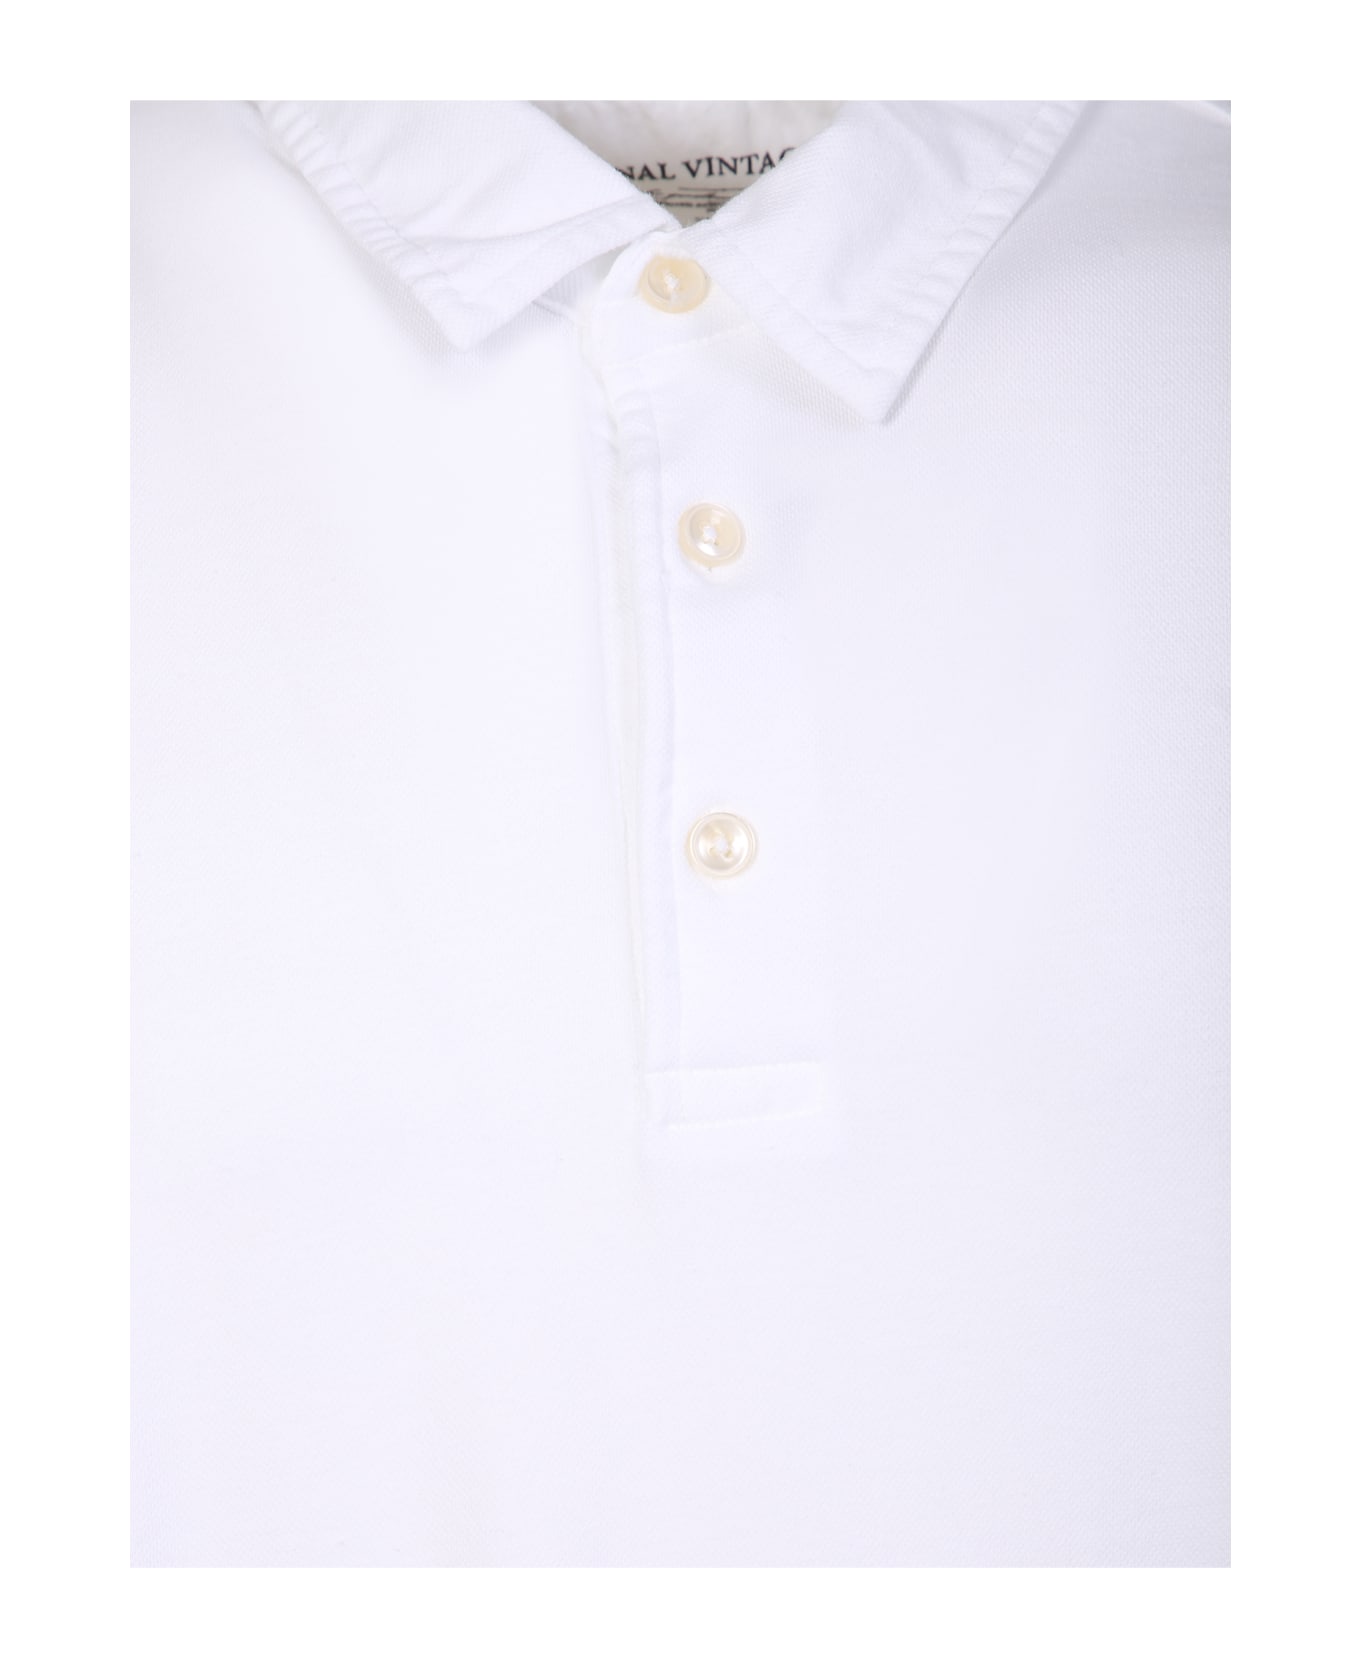 Original Vintage Style White Polo Shirt - White